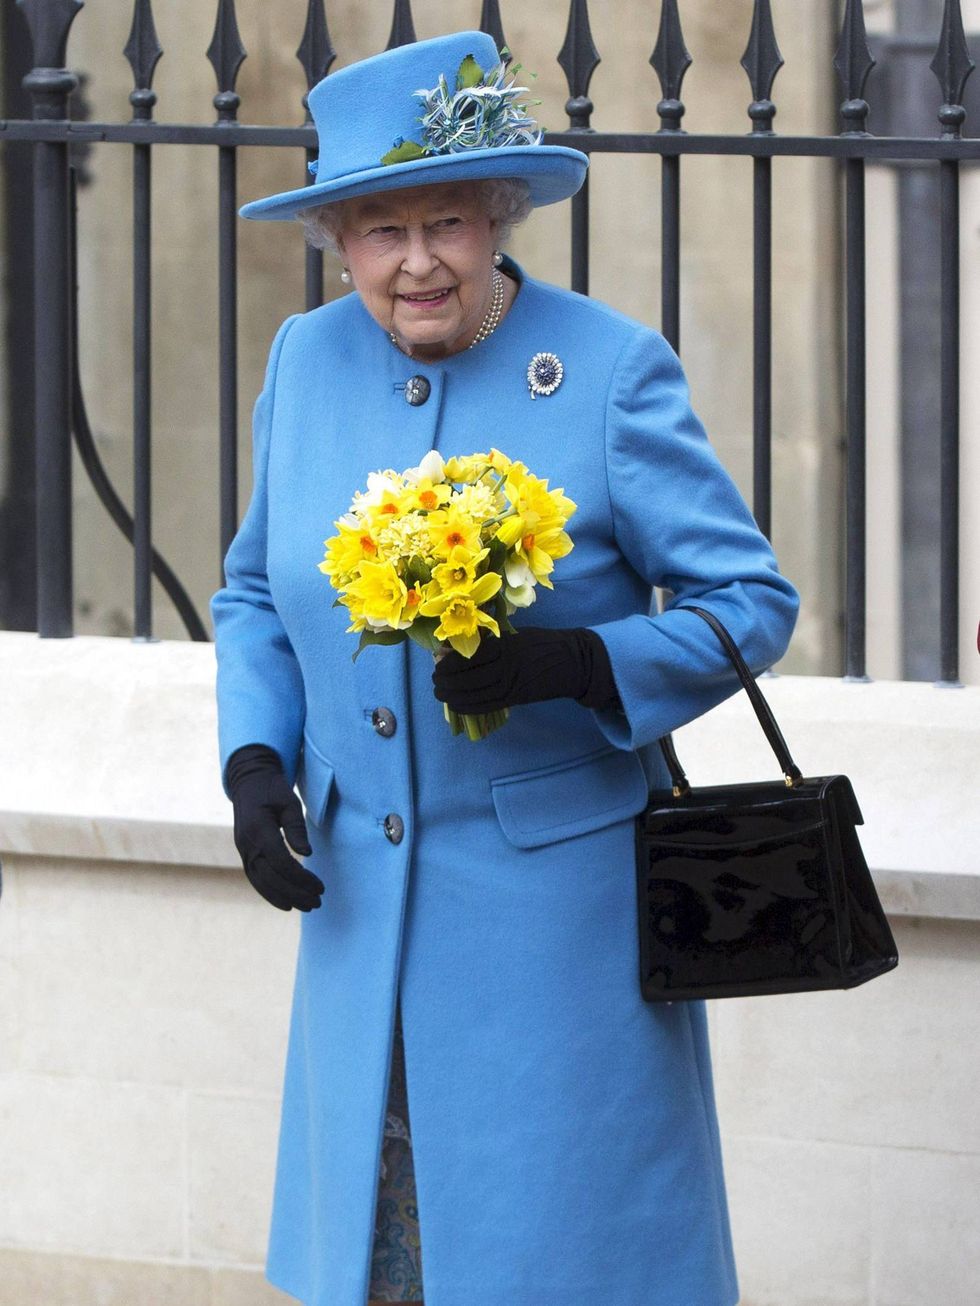 Questione di charme: lo stile arcobaleno della Regina Elisabetta